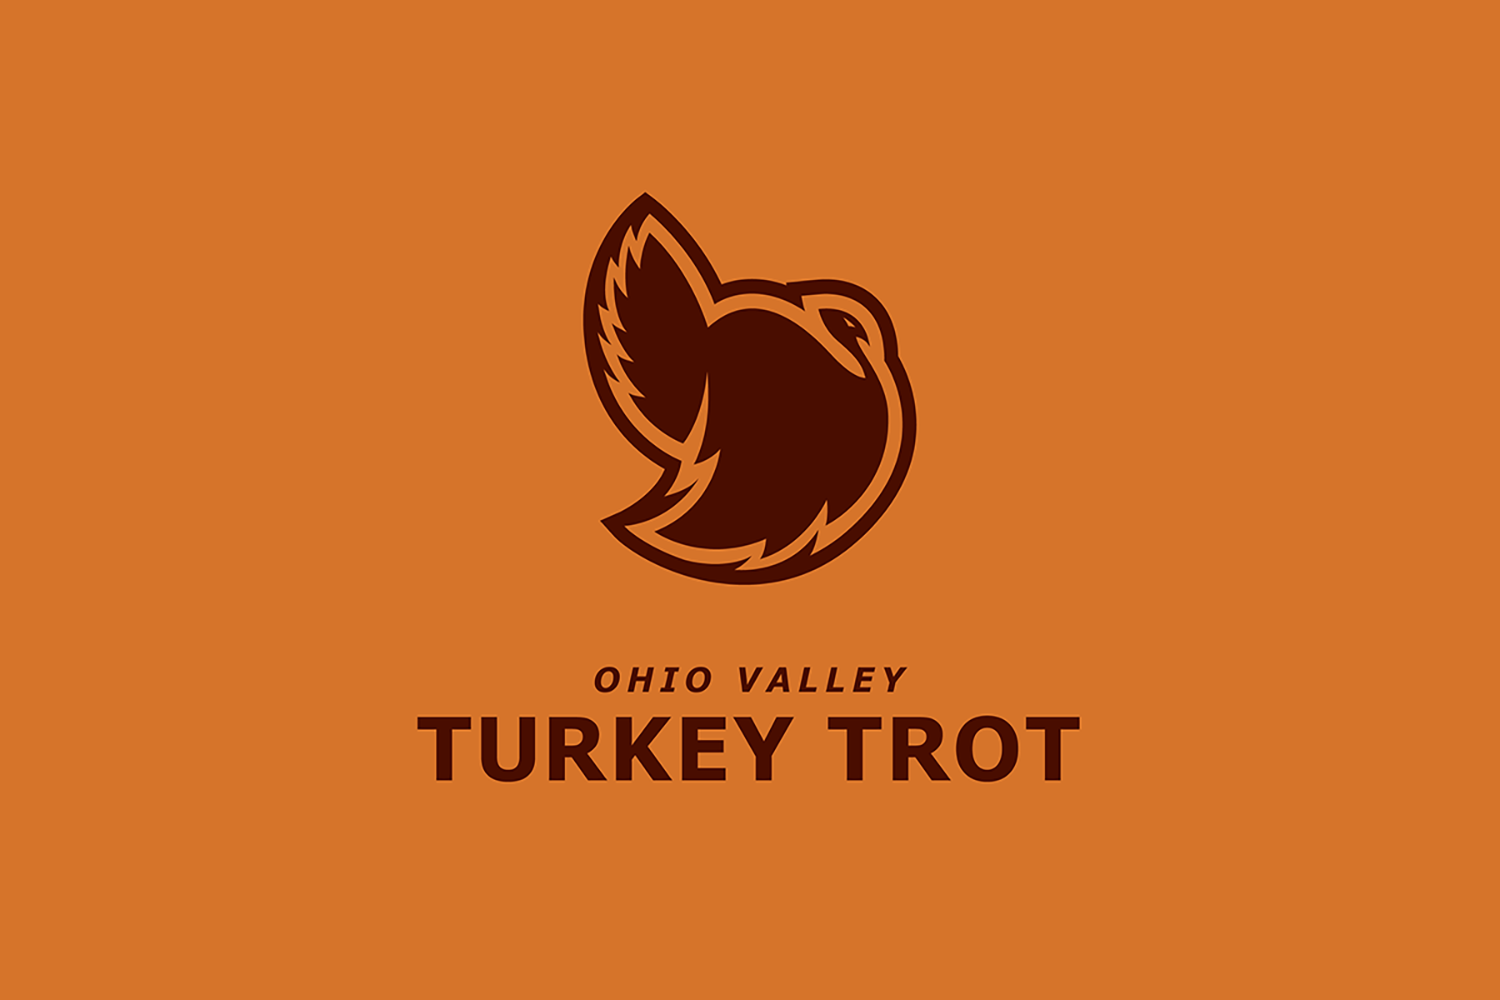 Ohio Valley Turkey Trot 5K logo